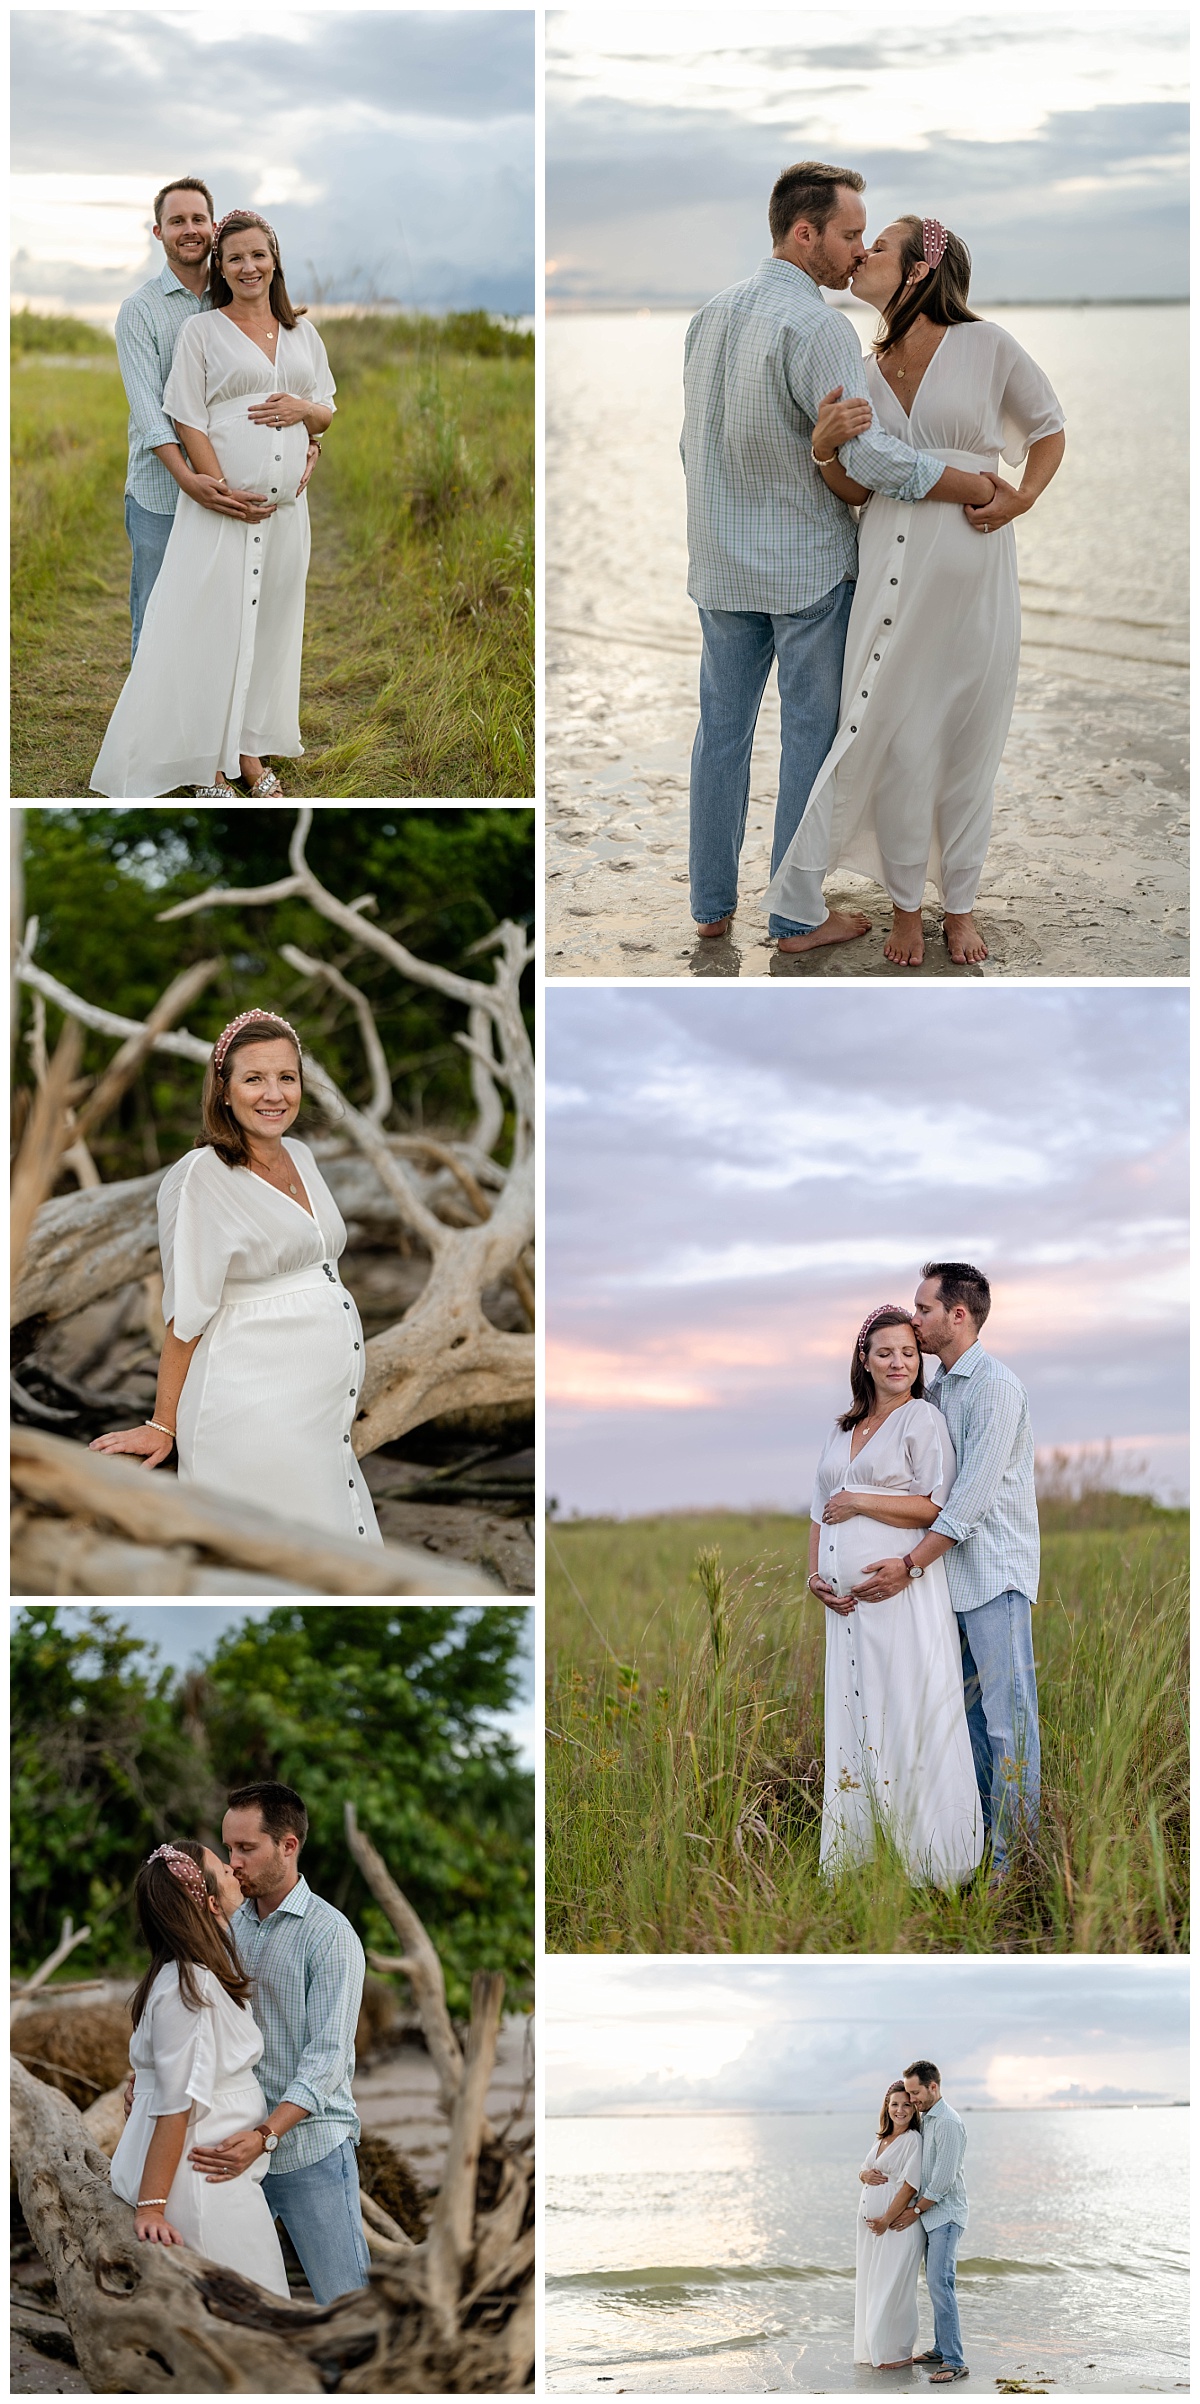 Southwest Florida pregnancy photos at Bowditch Point Park